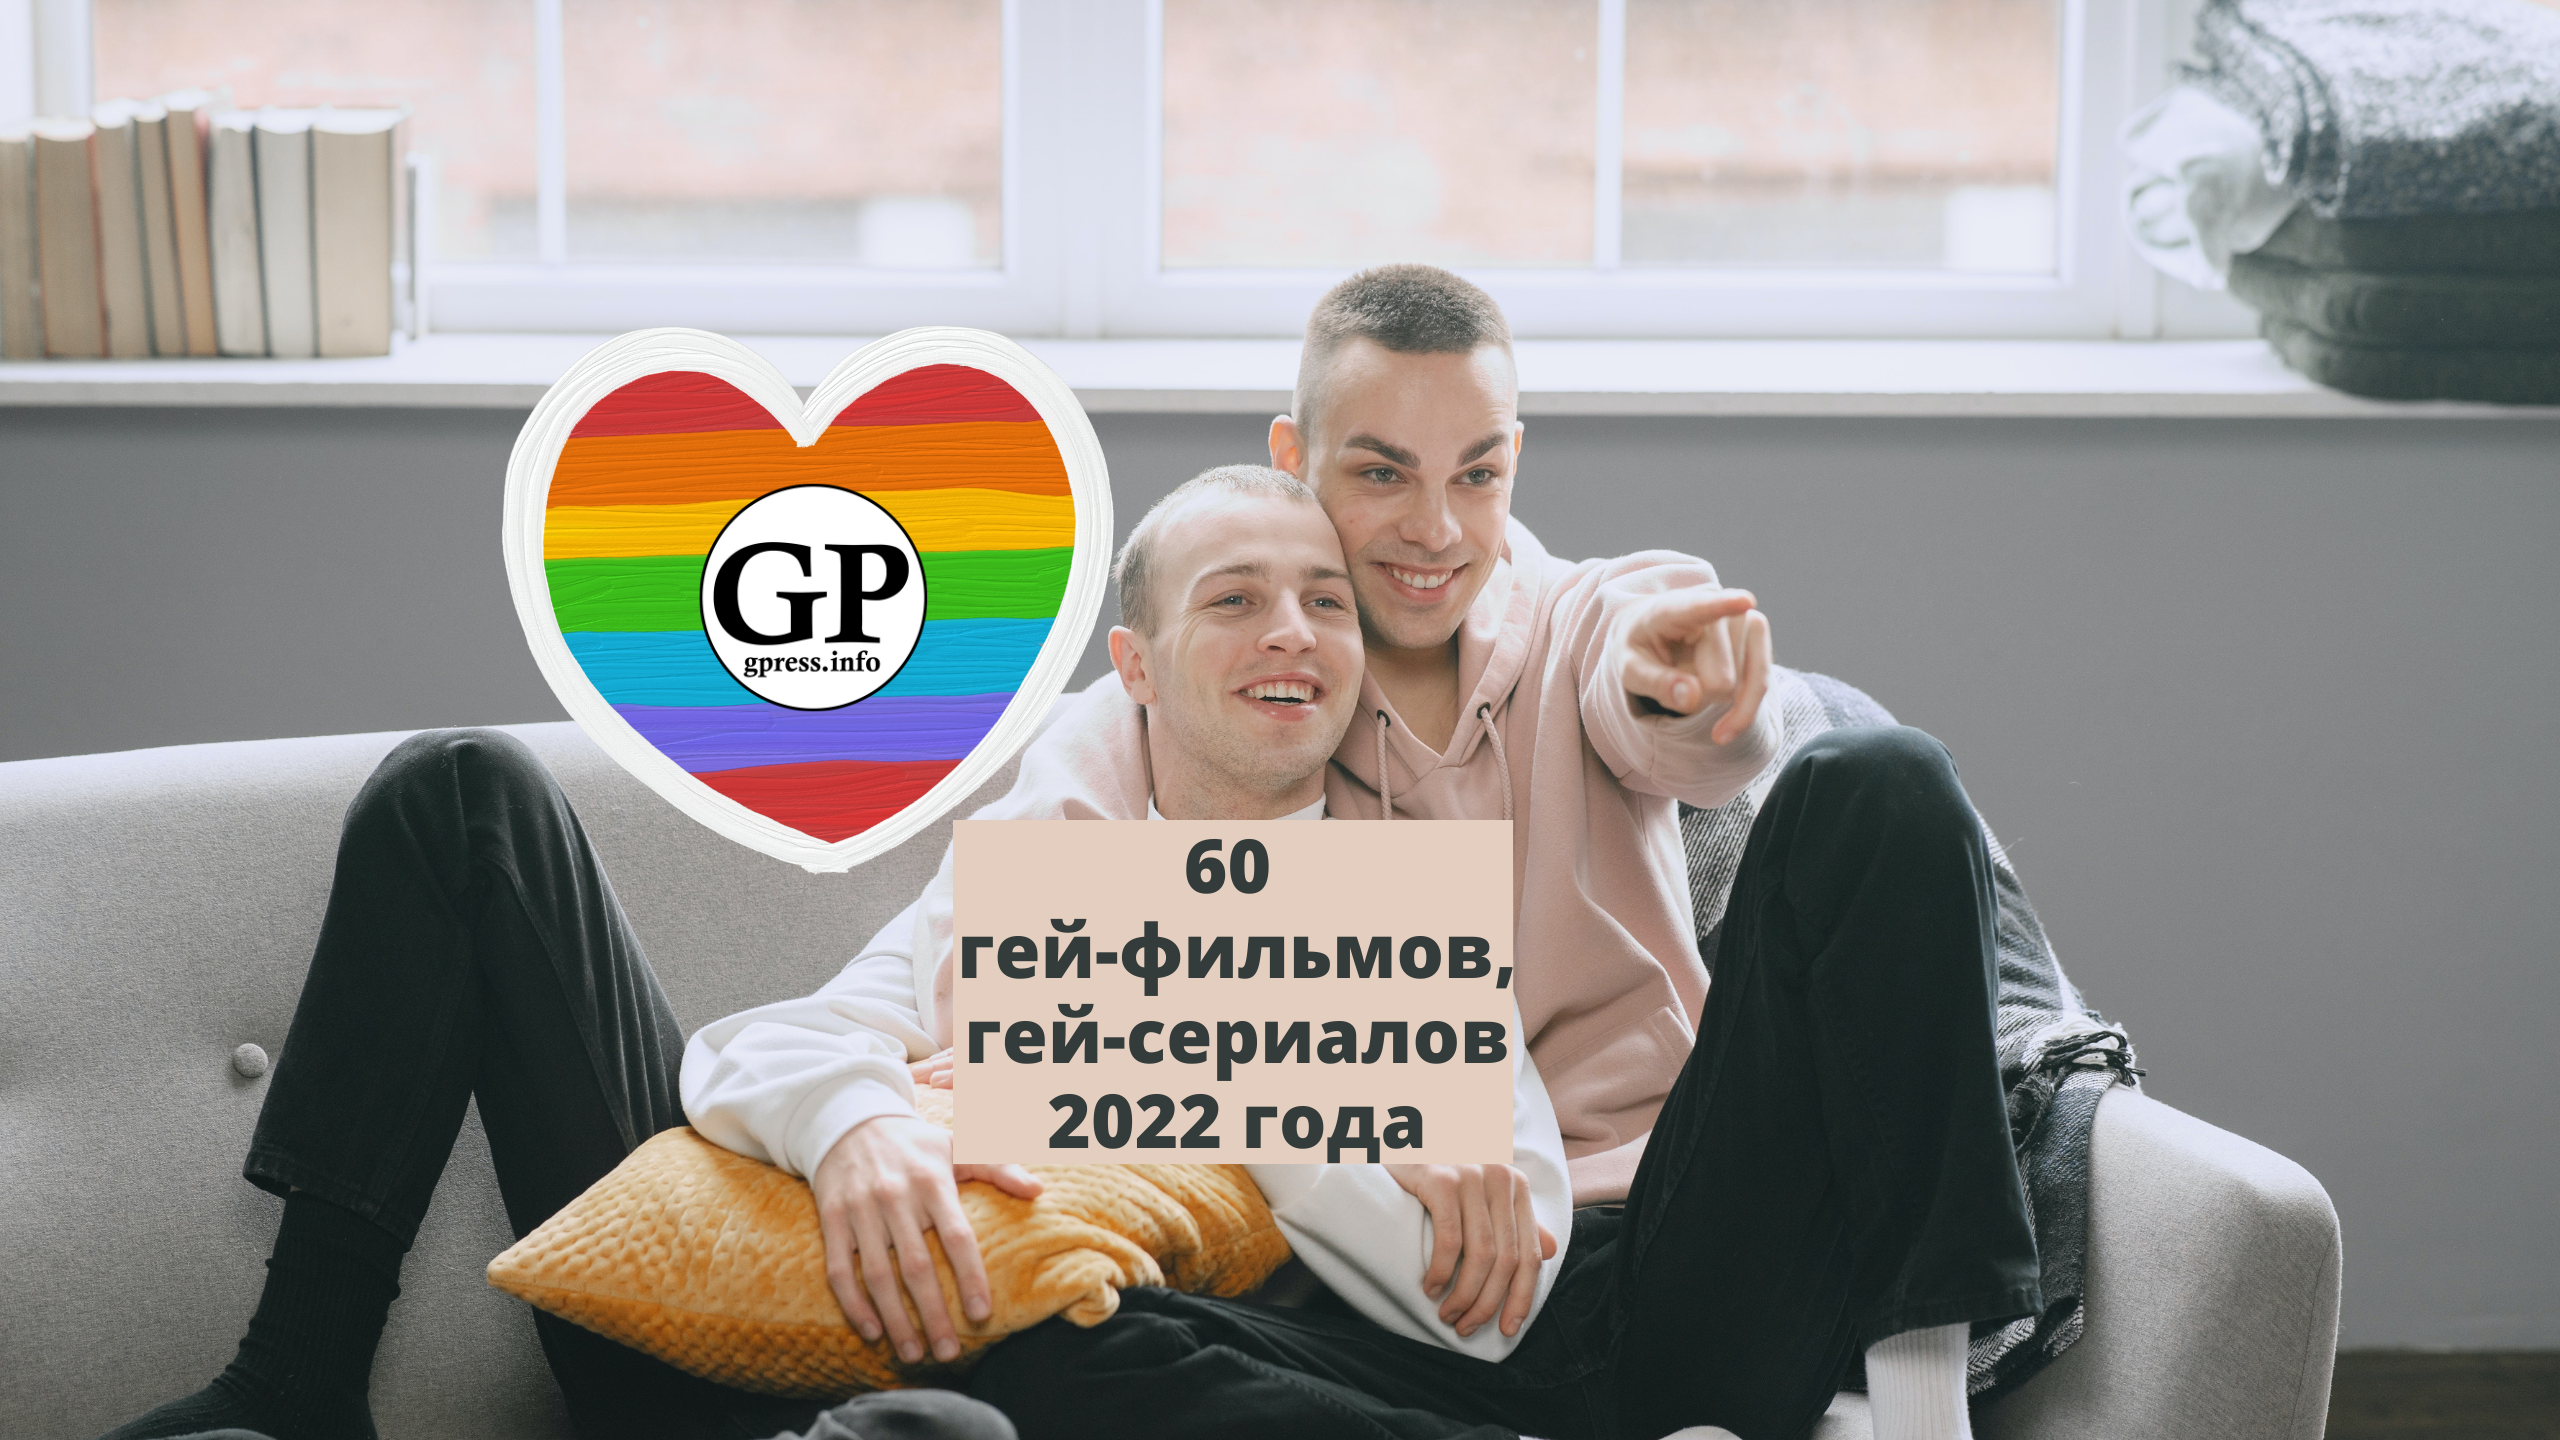 Гей-фильмы 2022 и гей-сериалы 2022. 60! Ссылки на просмотр!